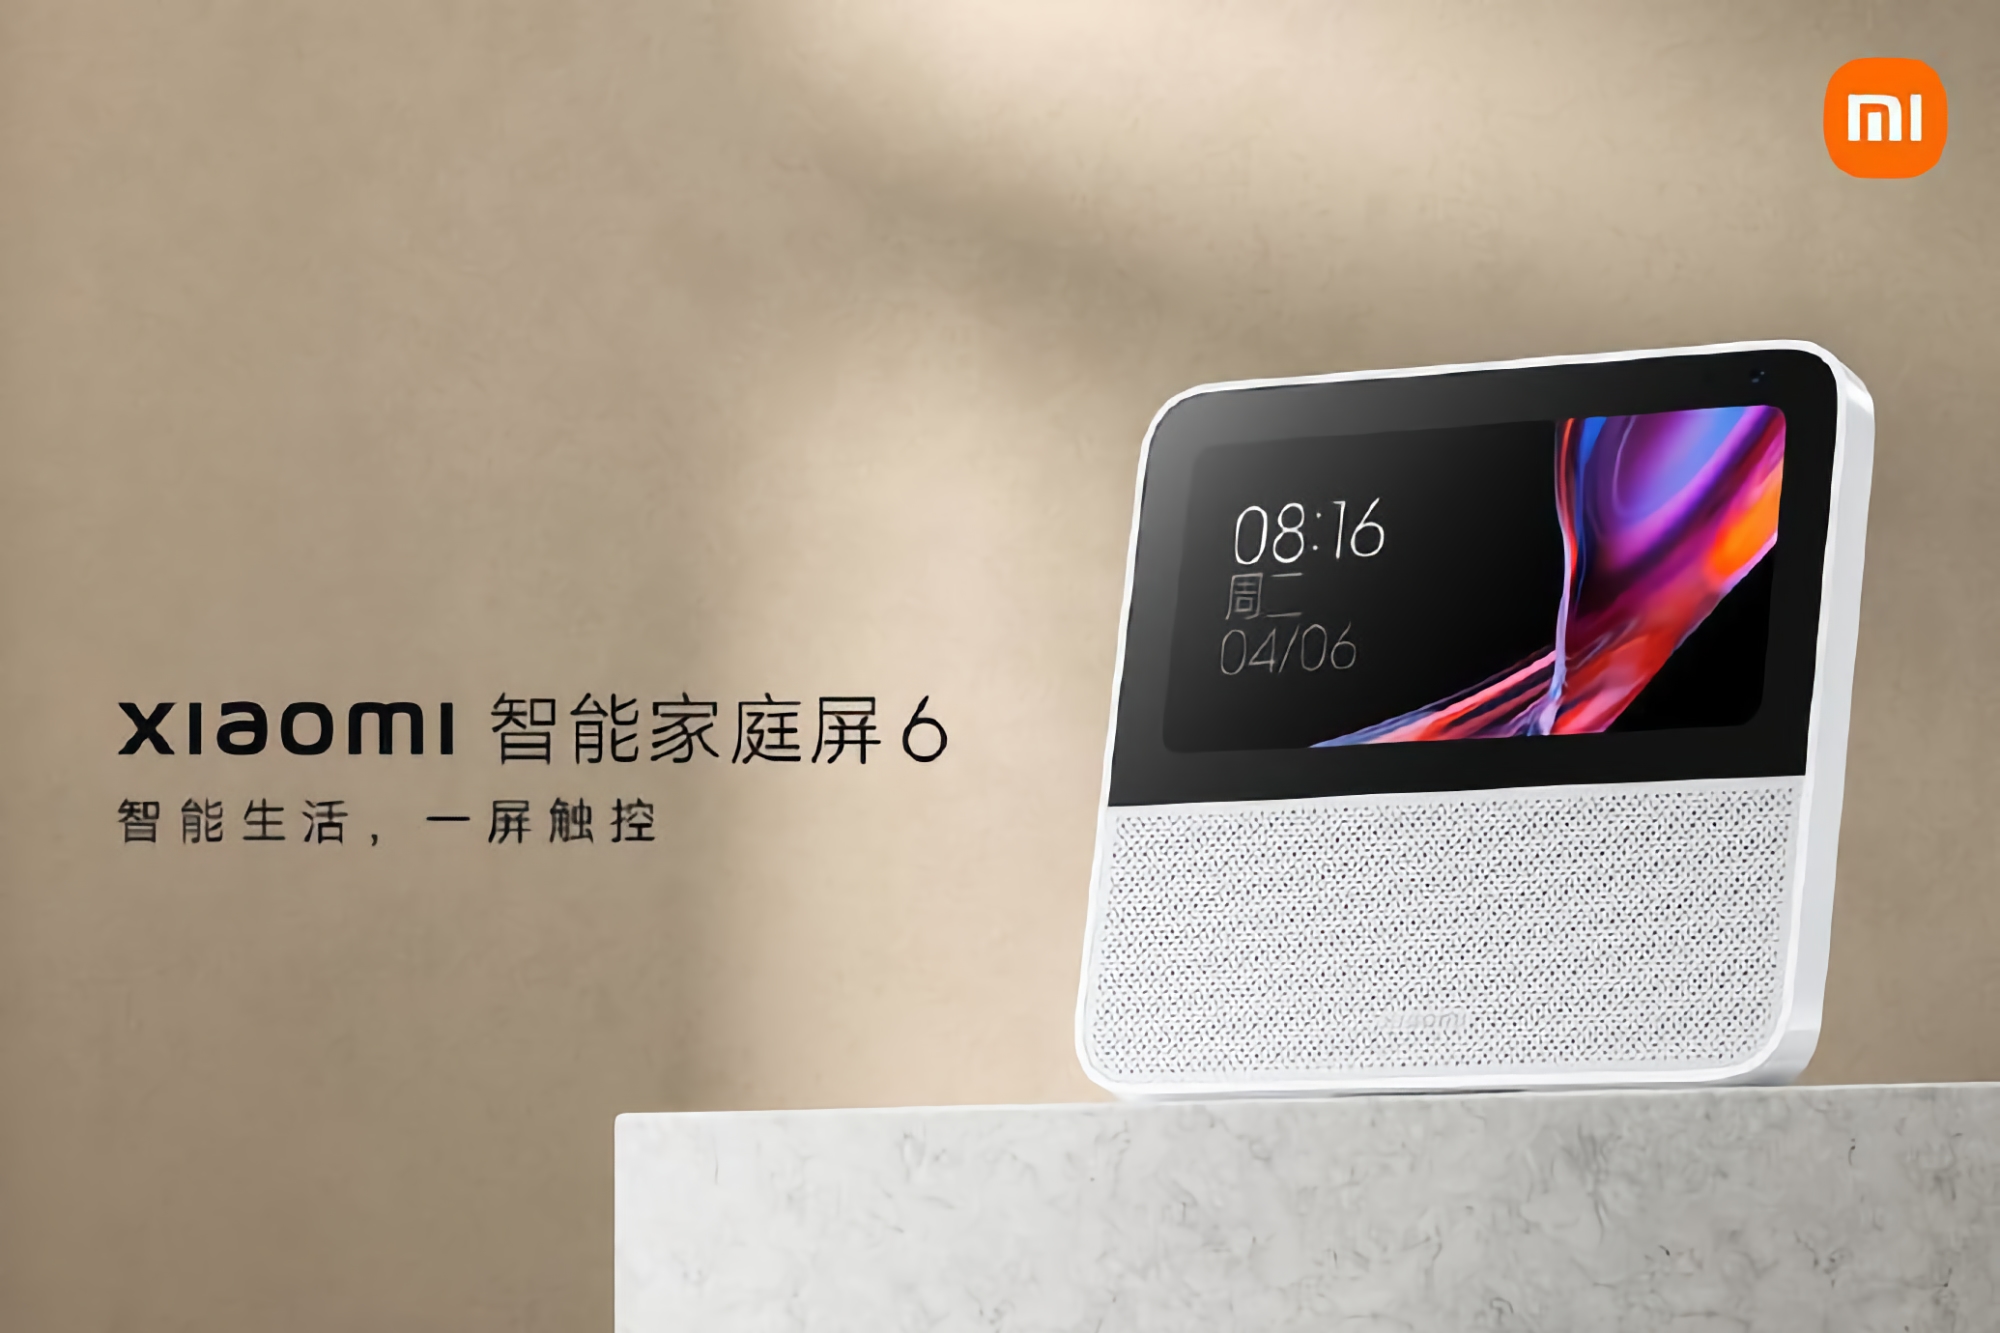 Xiaomi hat das Smart Home Display 6 vorgestellt: 6-Zoll-Display, 2-MP-Kamera und integrierter Sprachassistent für 52 Dollar